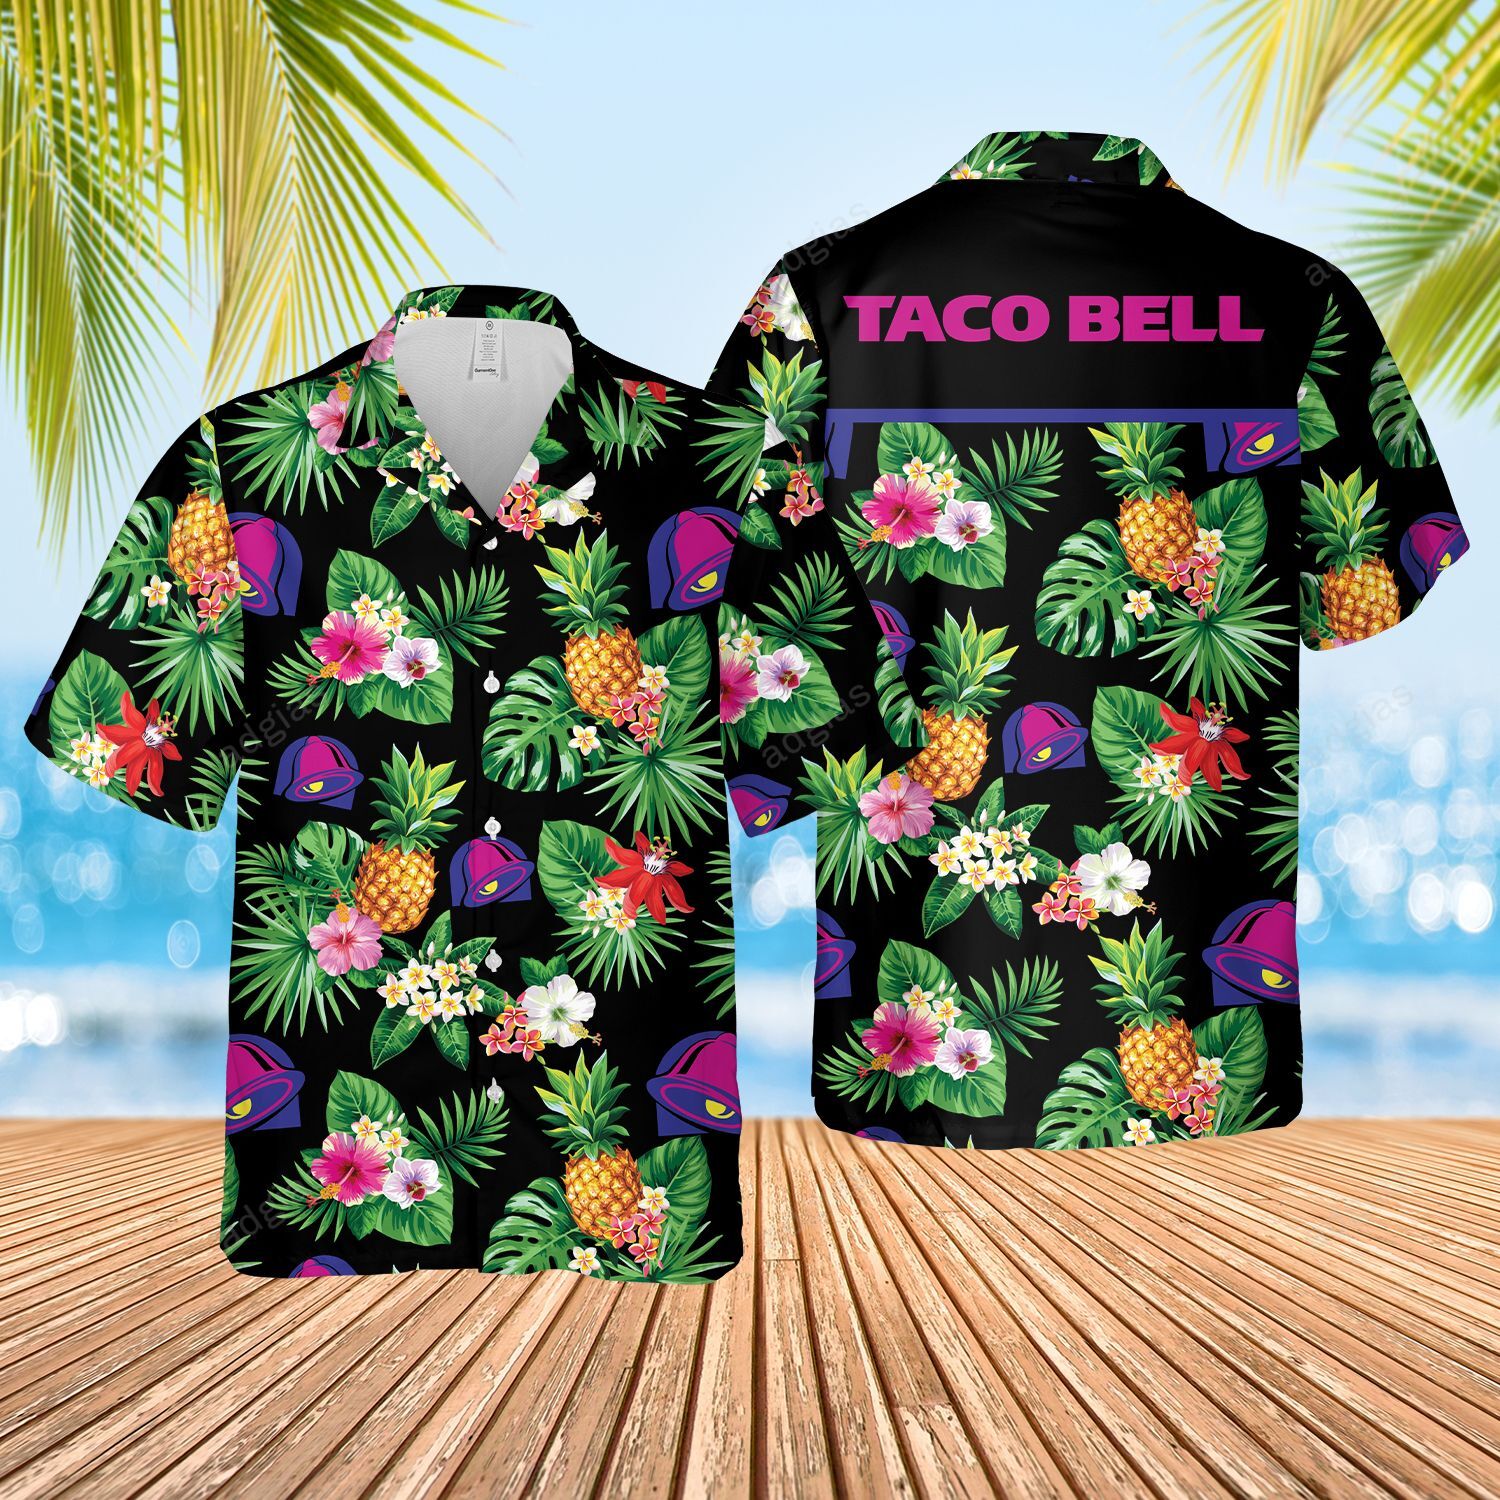 (2) TBFF Hawaii Style Hawaiian Summer Shirt